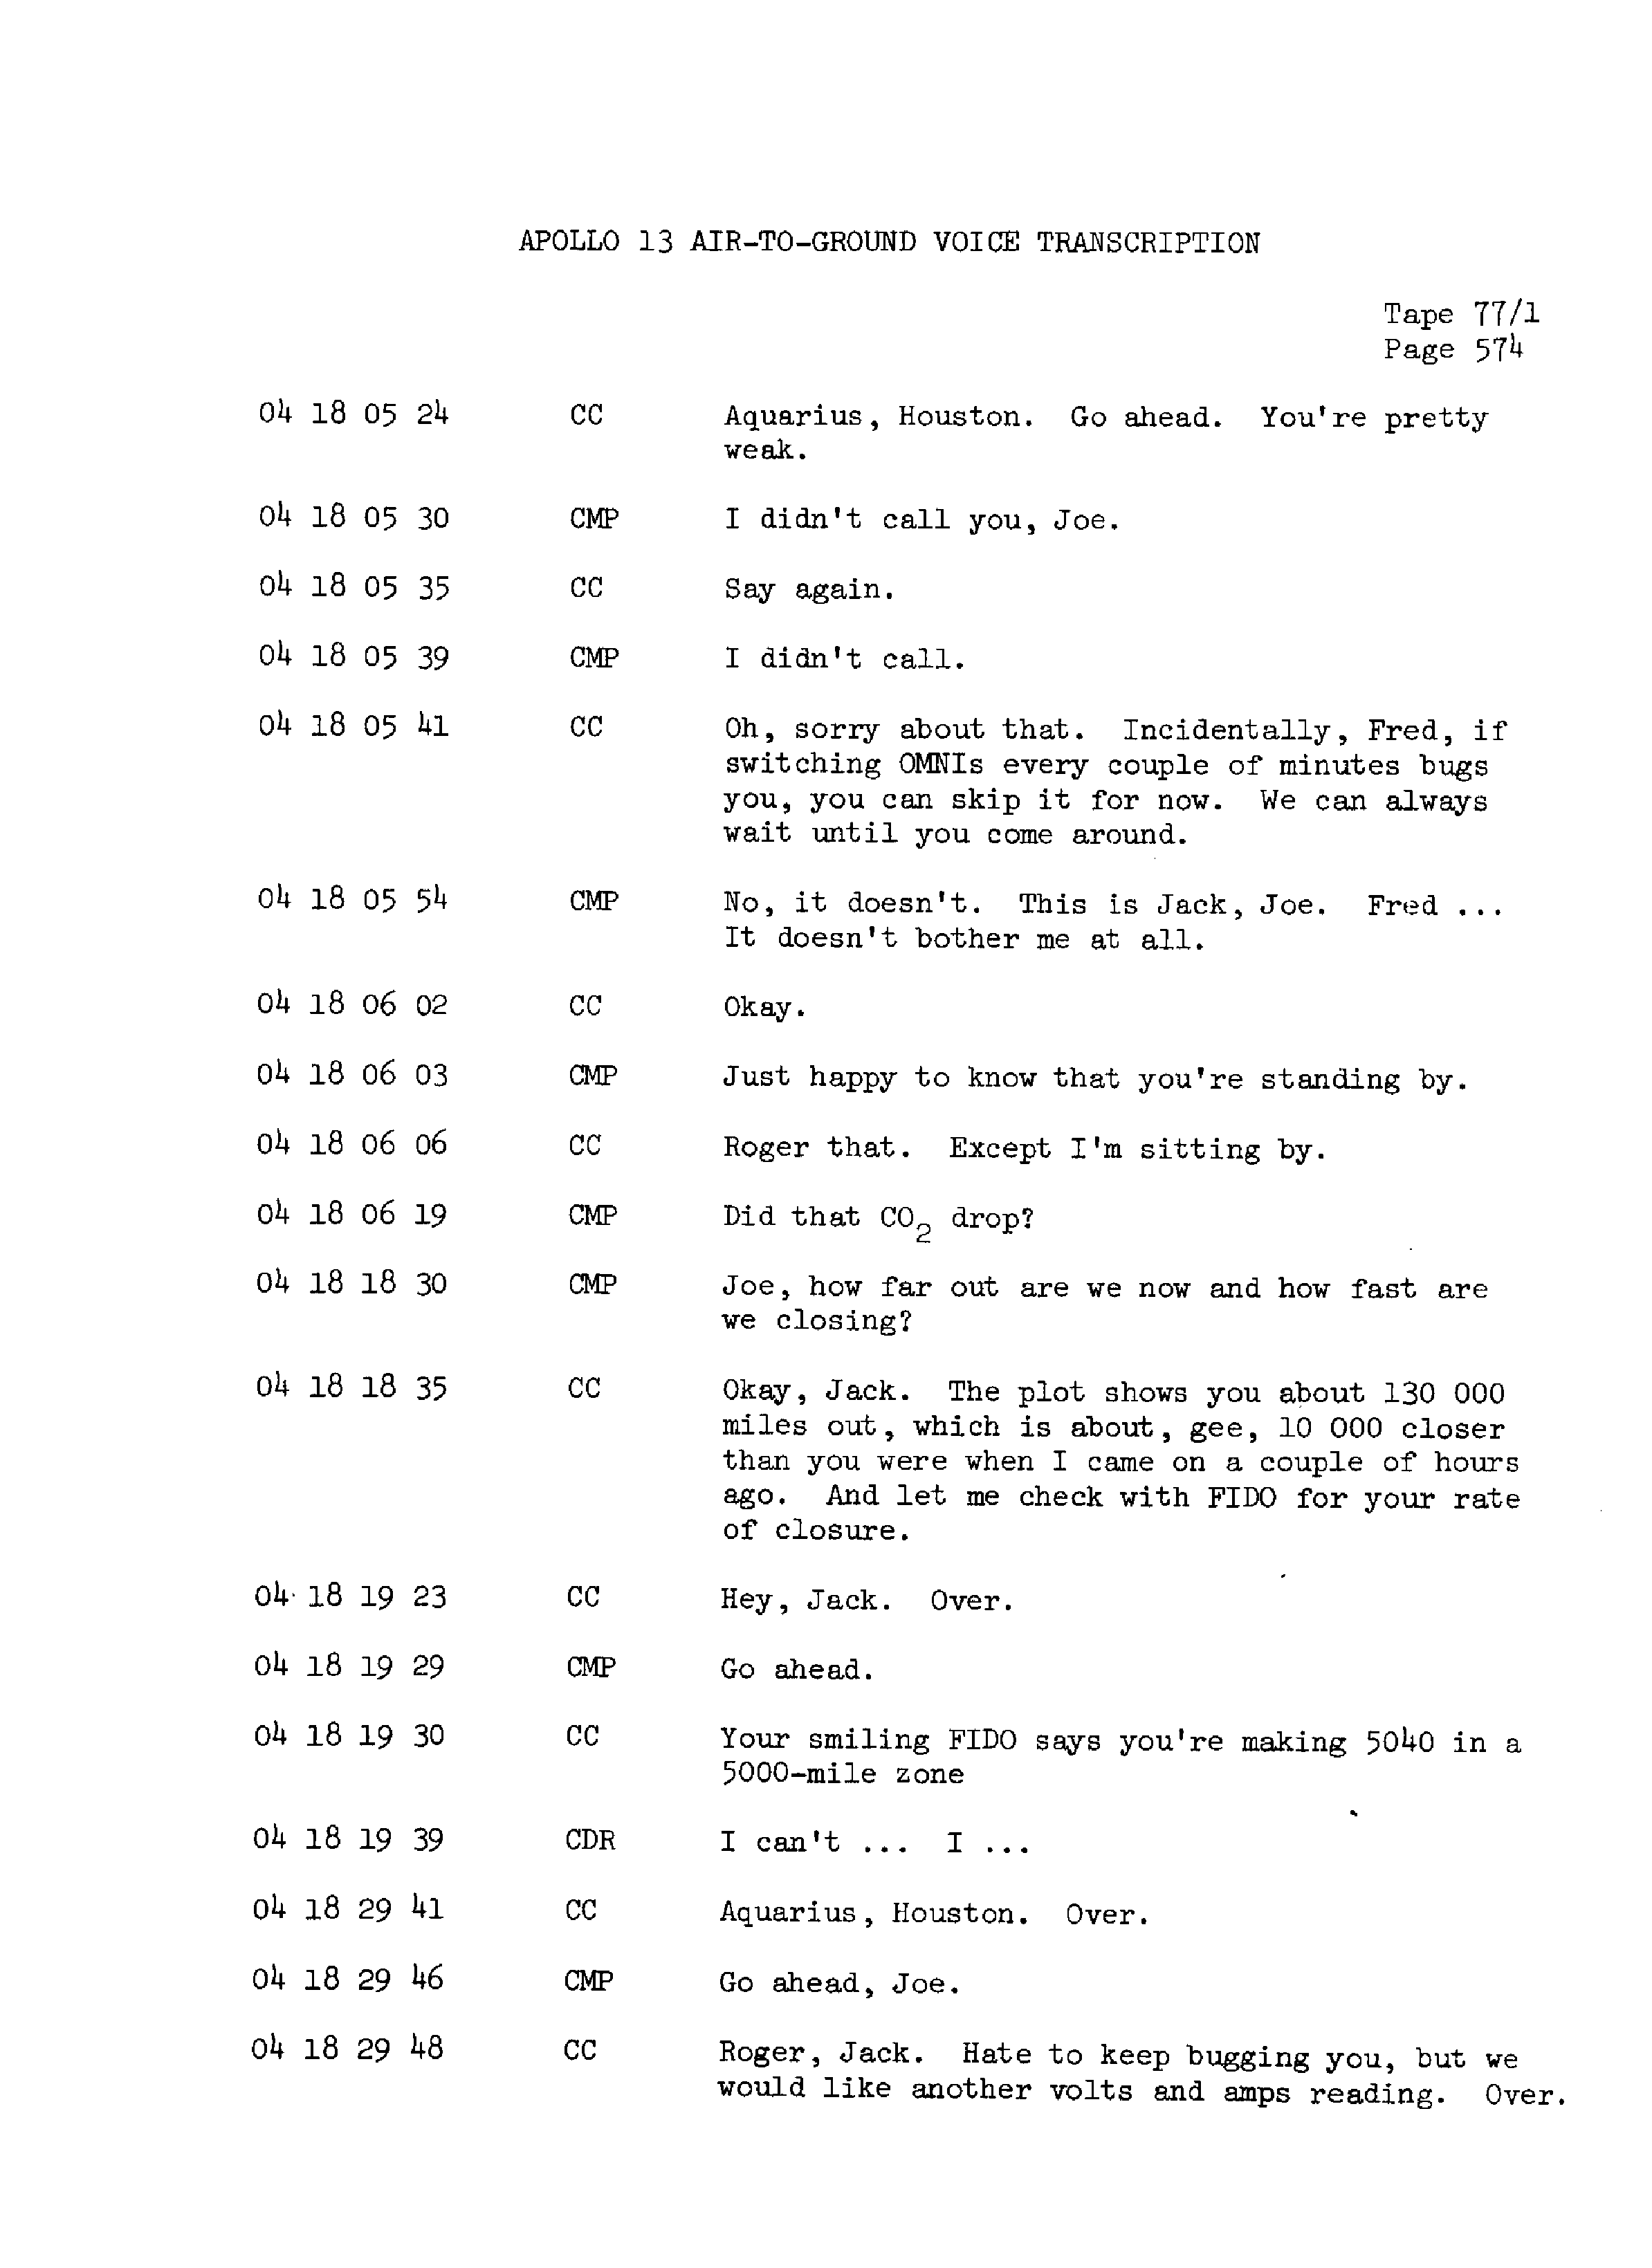 Page 581 of Apollo 13’s original transcript